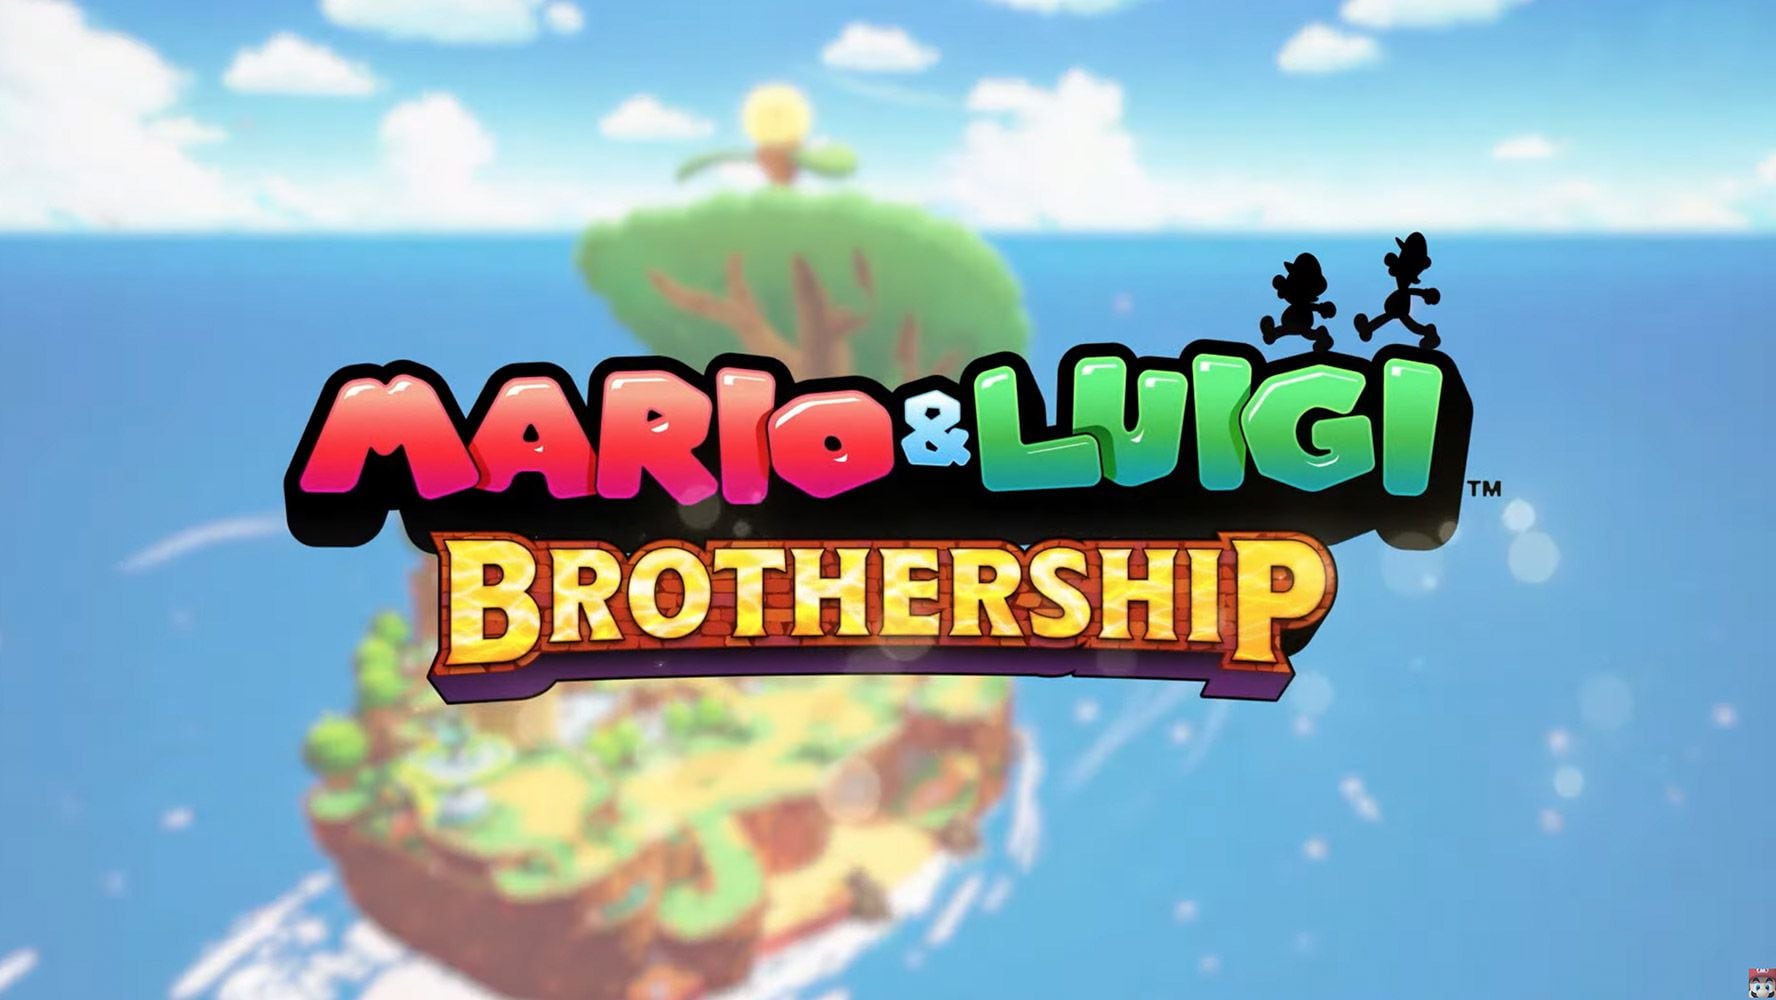 Portada del nuevo videojuego de los hermanos Mario y Luigi.